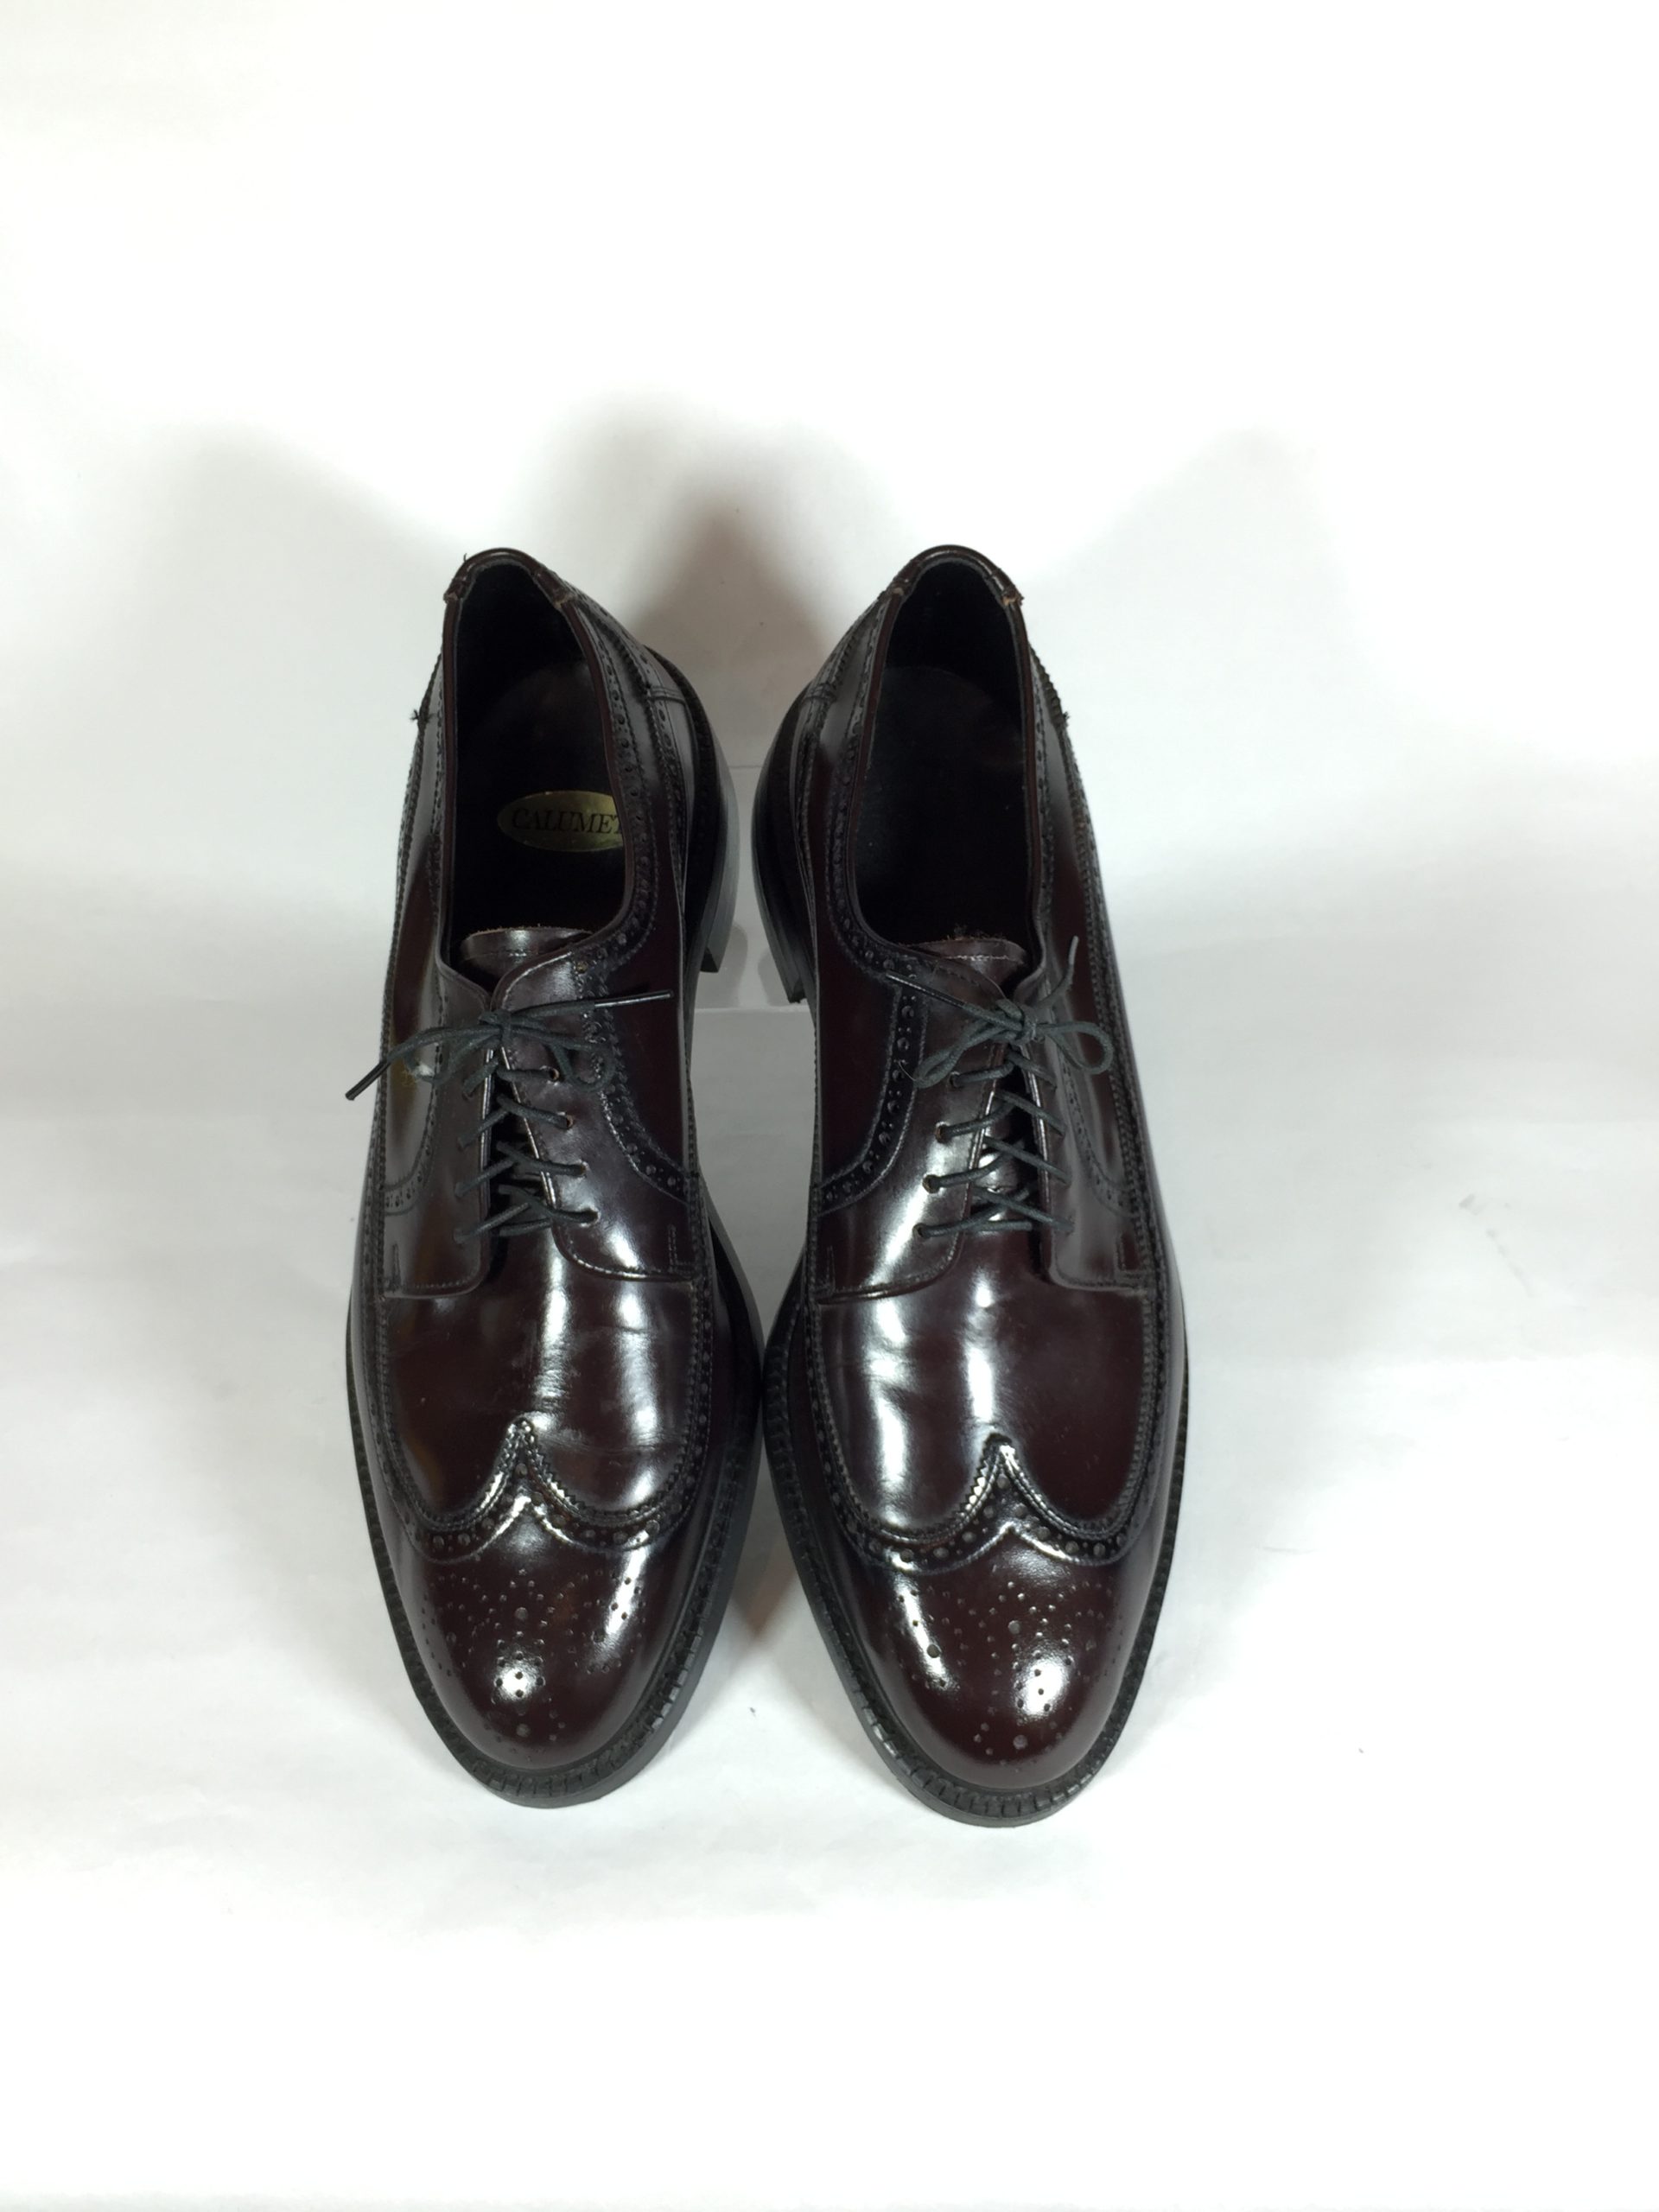 メンズウィングチップシューズ ヴィンテージ レザー本革 紳士靴 1960’s ブラウン 28.5㎝